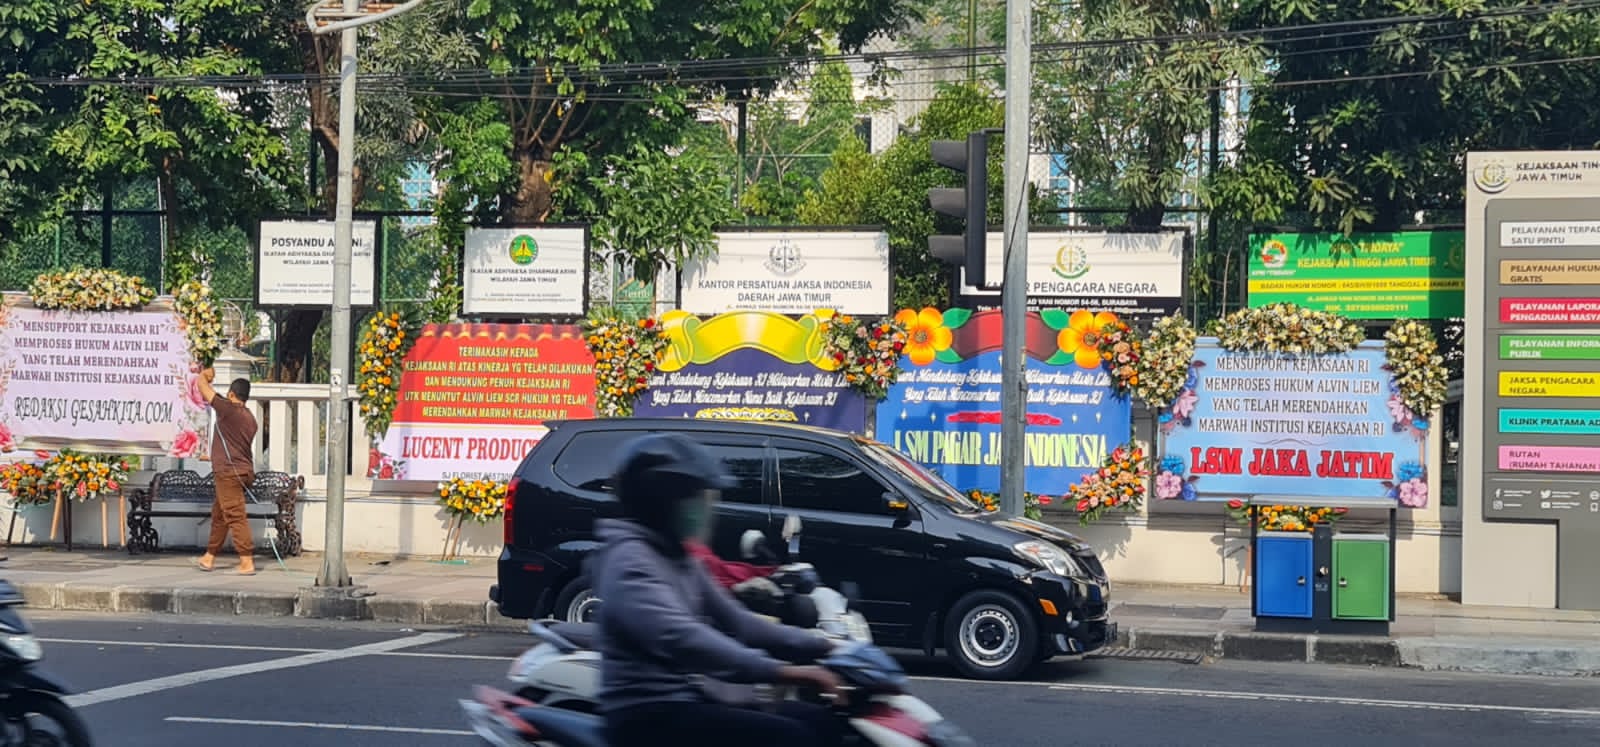 ratusan karangan bunga berjejer di halaman kantor Kejati Jatim dari sejumlah elemen masyarakat sebagai bentuk dukungan langkah hukum terhadap Alvien Lim (Foto / Istimewa)